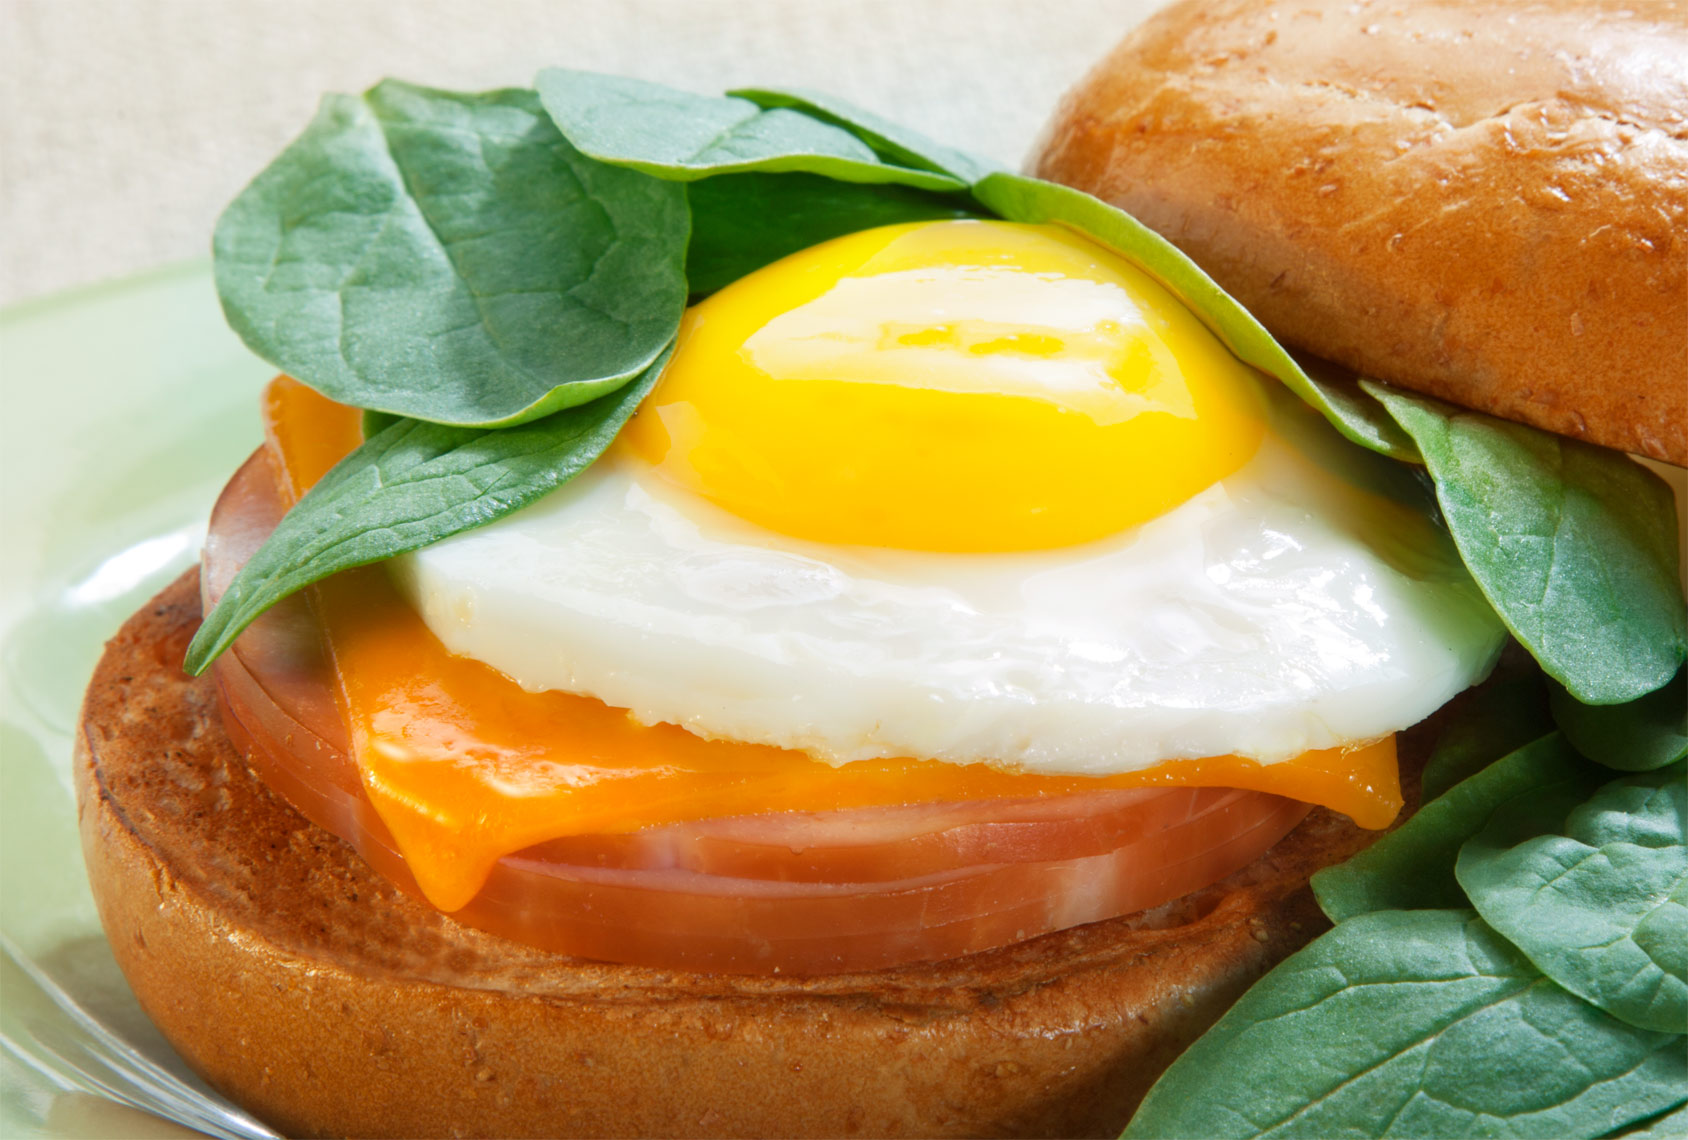 Egg breakfast sandwich